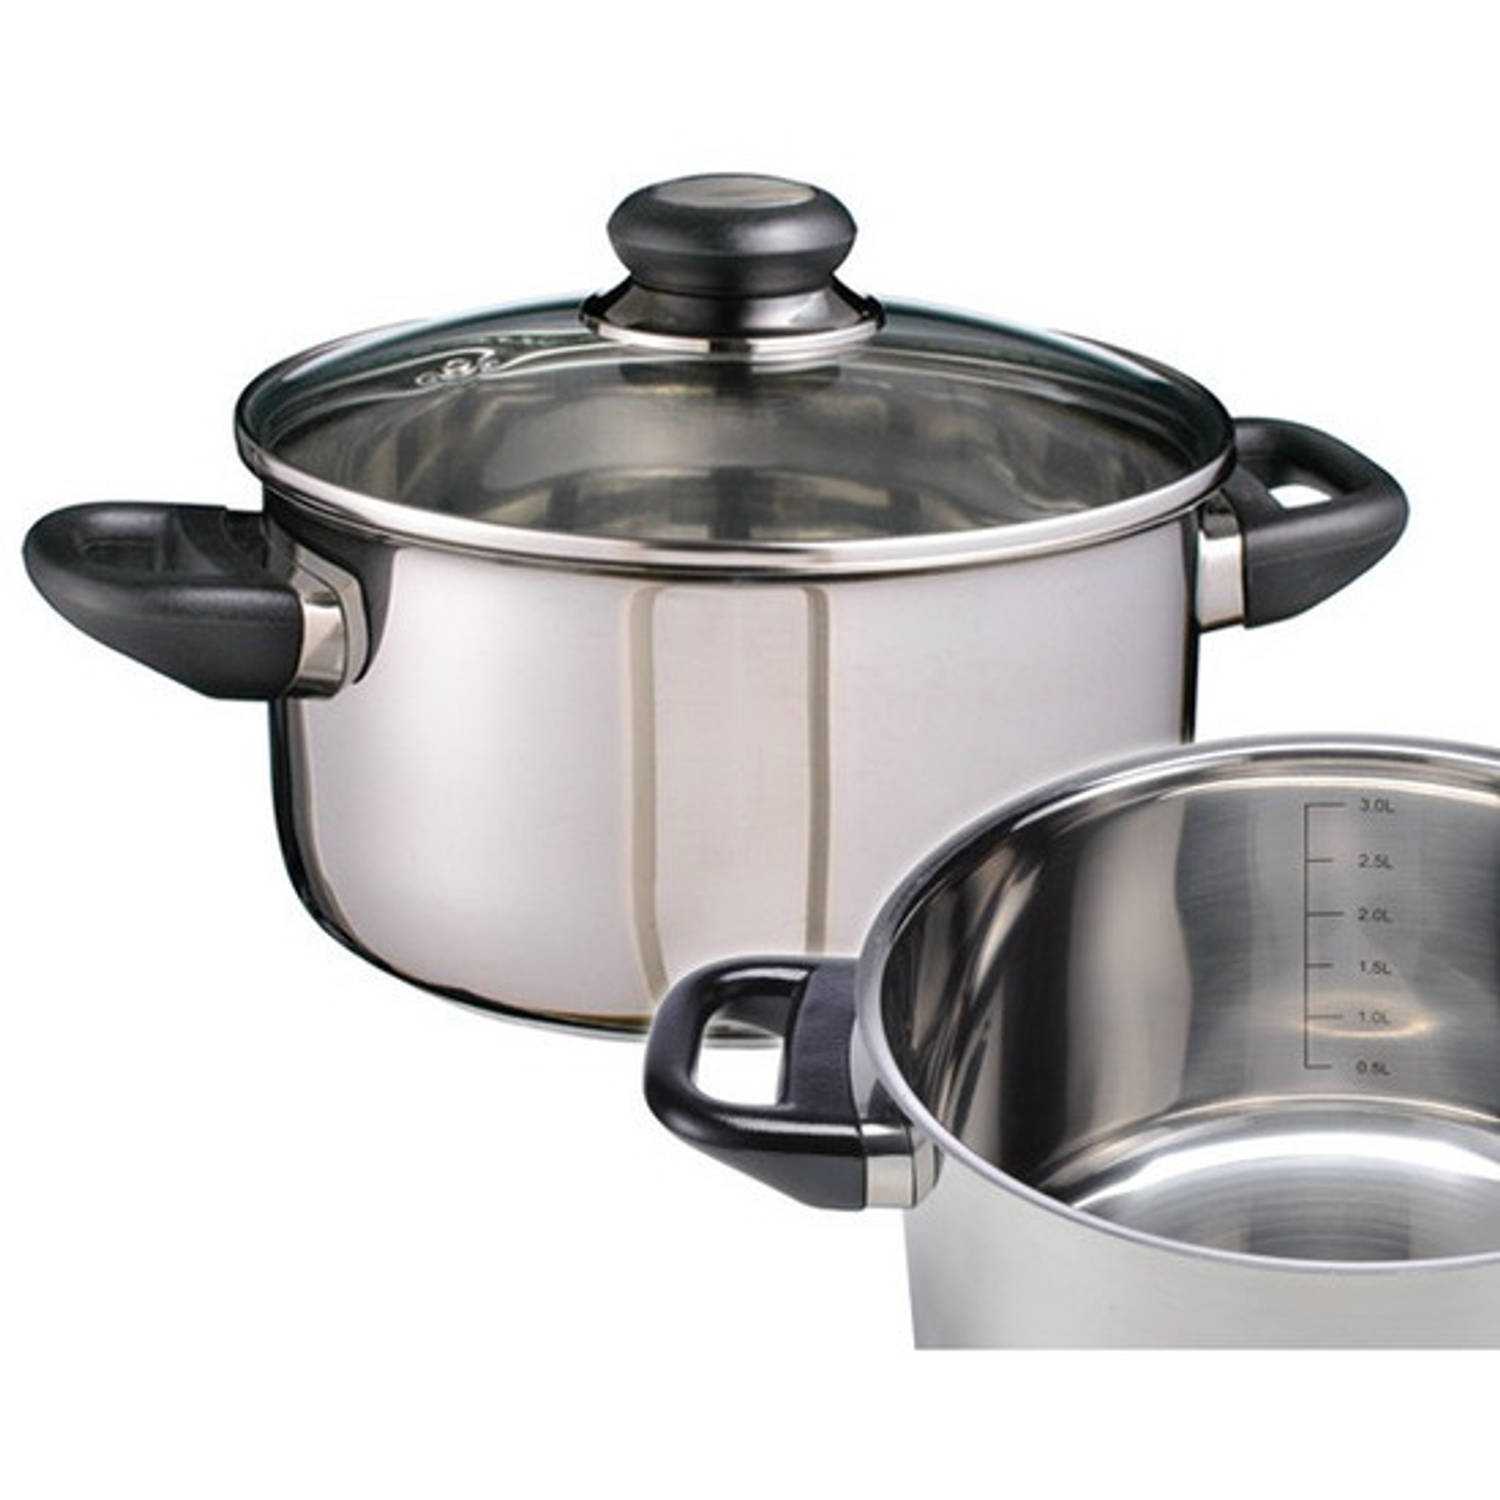 Nageslacht beddengoed is genoeg RVS kookpan / pan met glazen deksel 20 cm - Kookpannen | Blokker